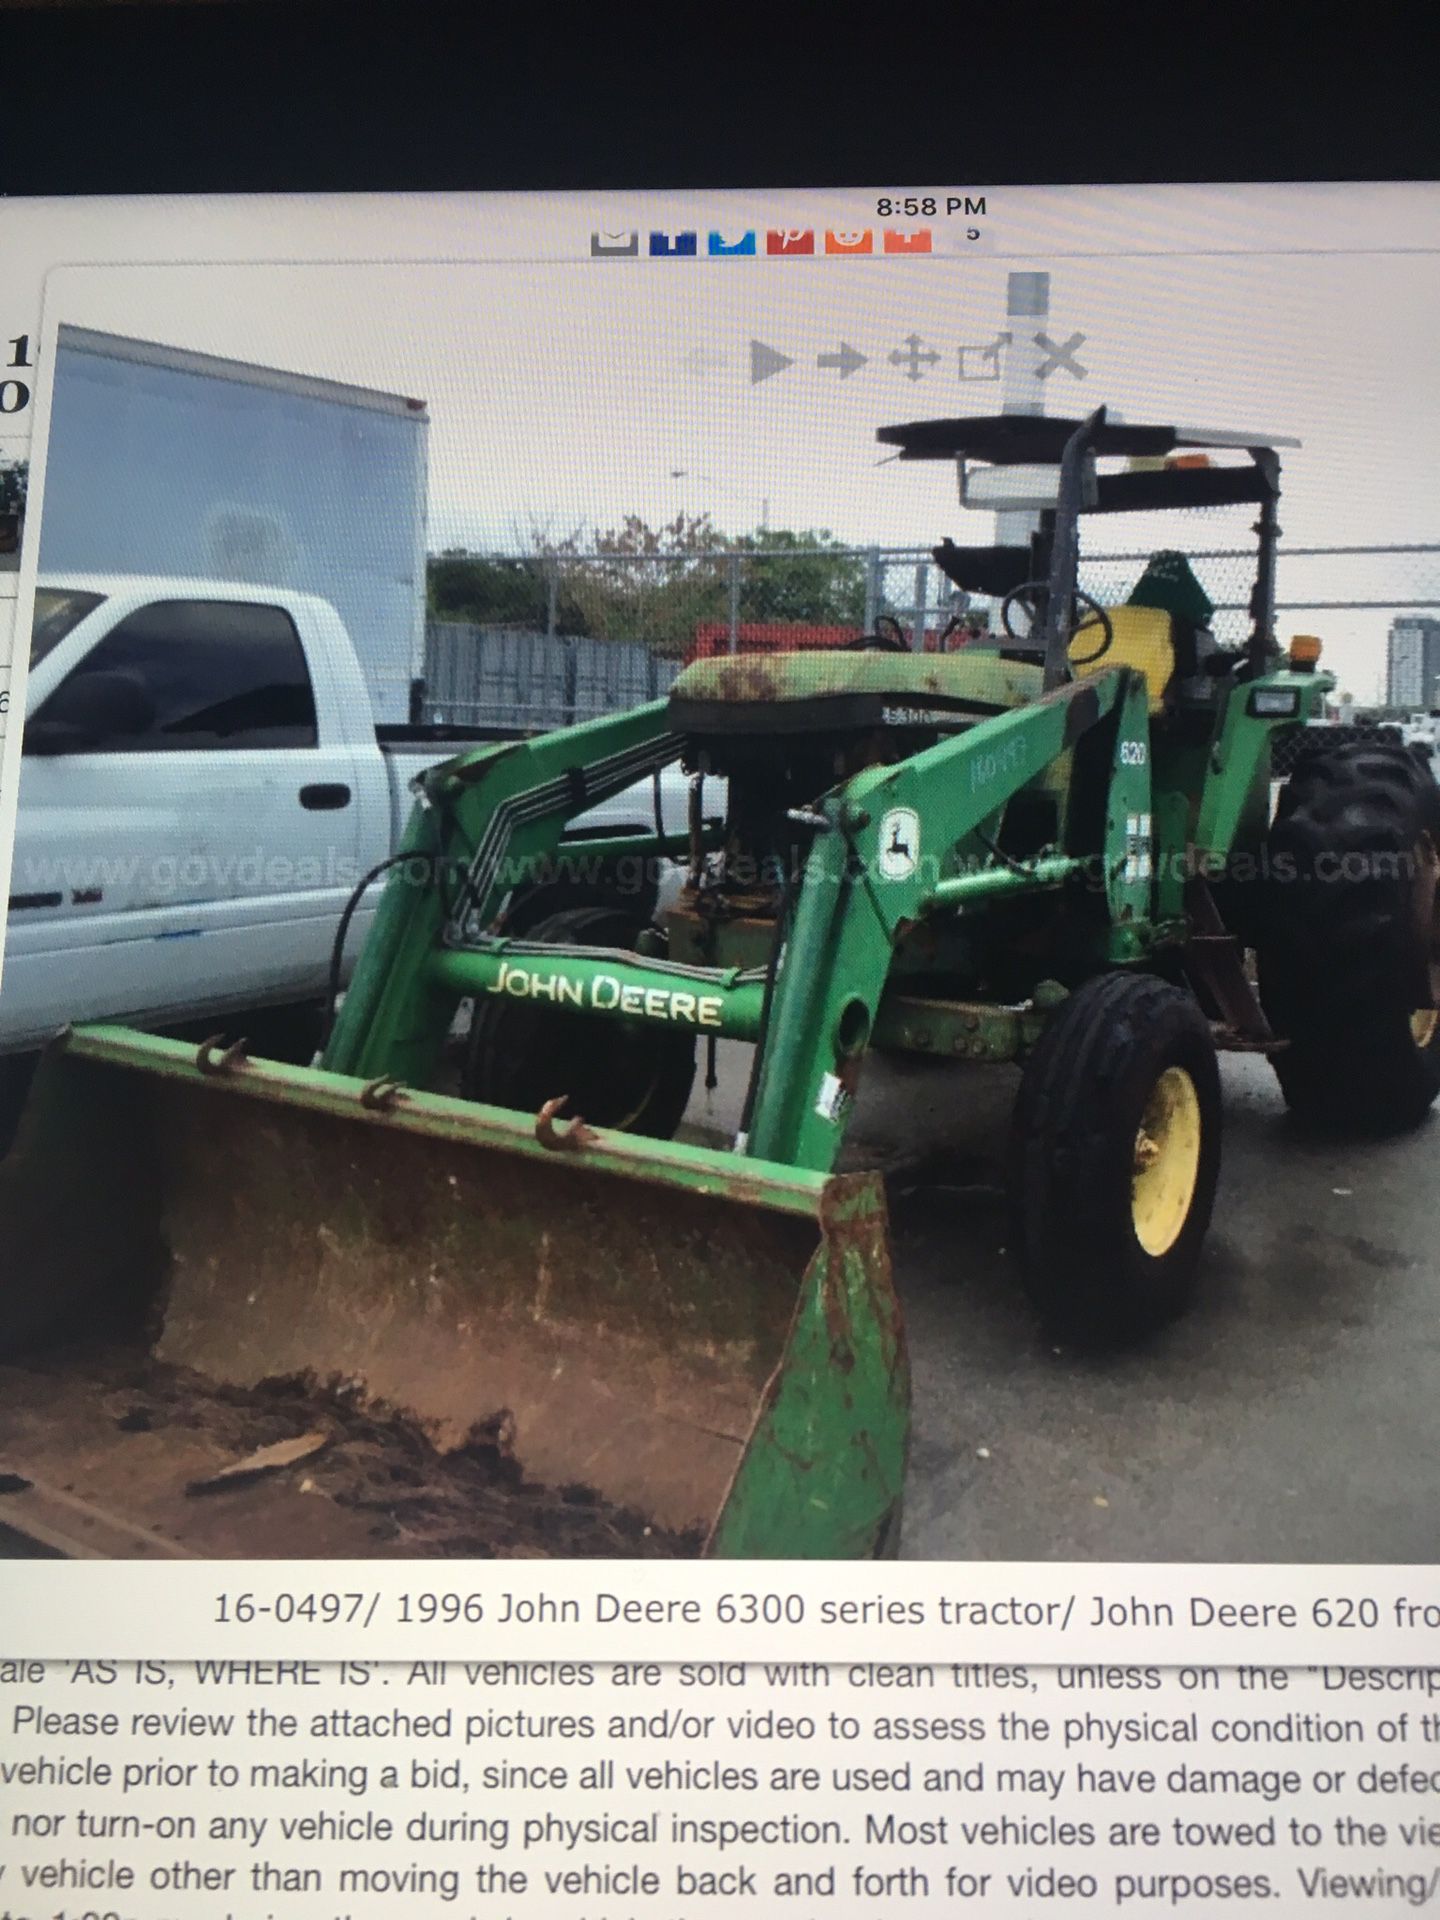 John Deere tractor 6300